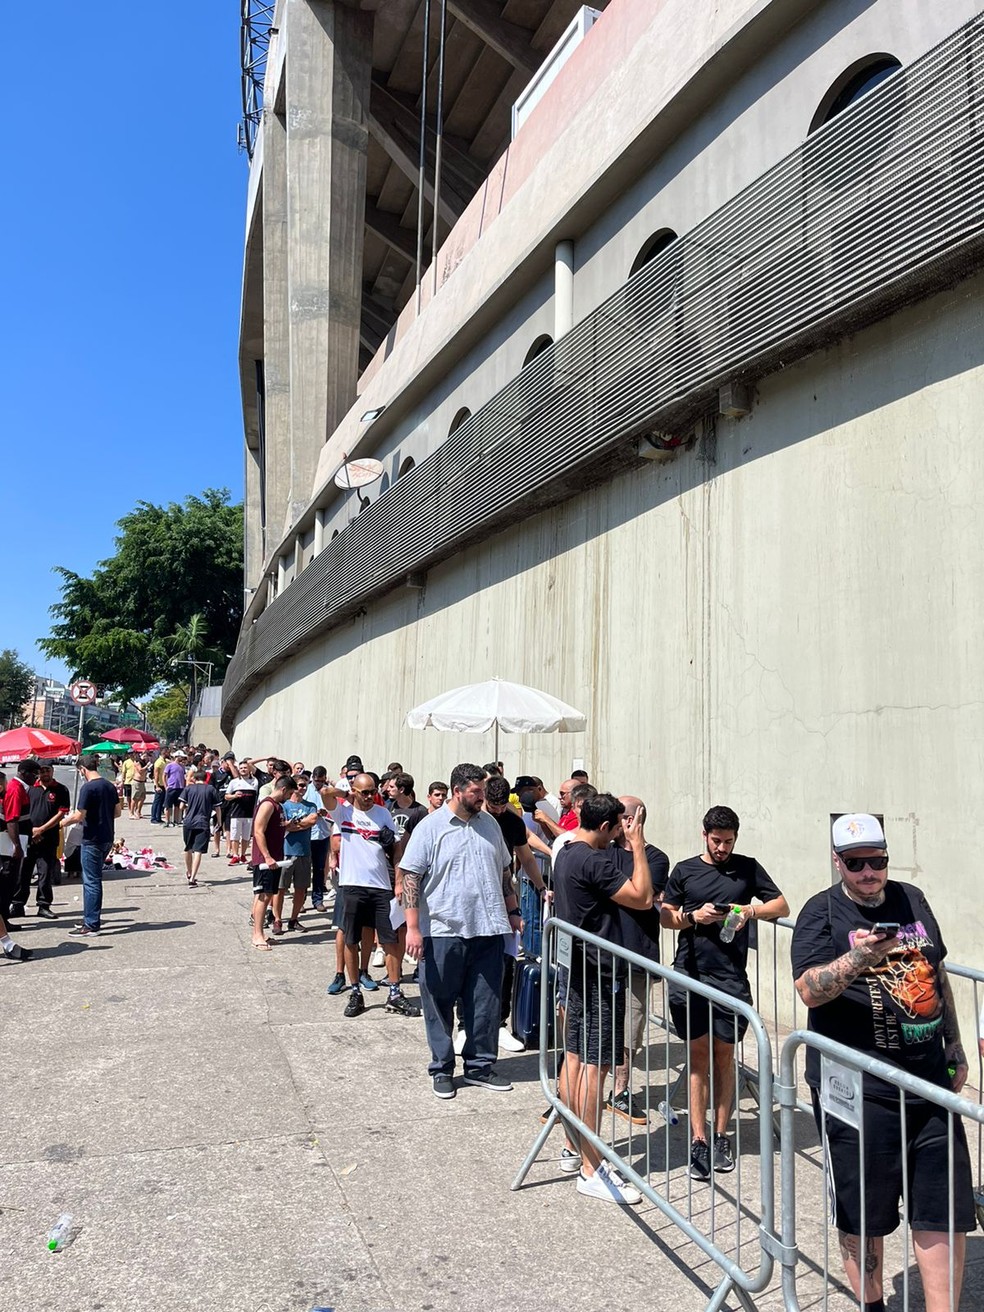 Ingresso Flamengo x São Paulo: como comprar entrada para jogo do